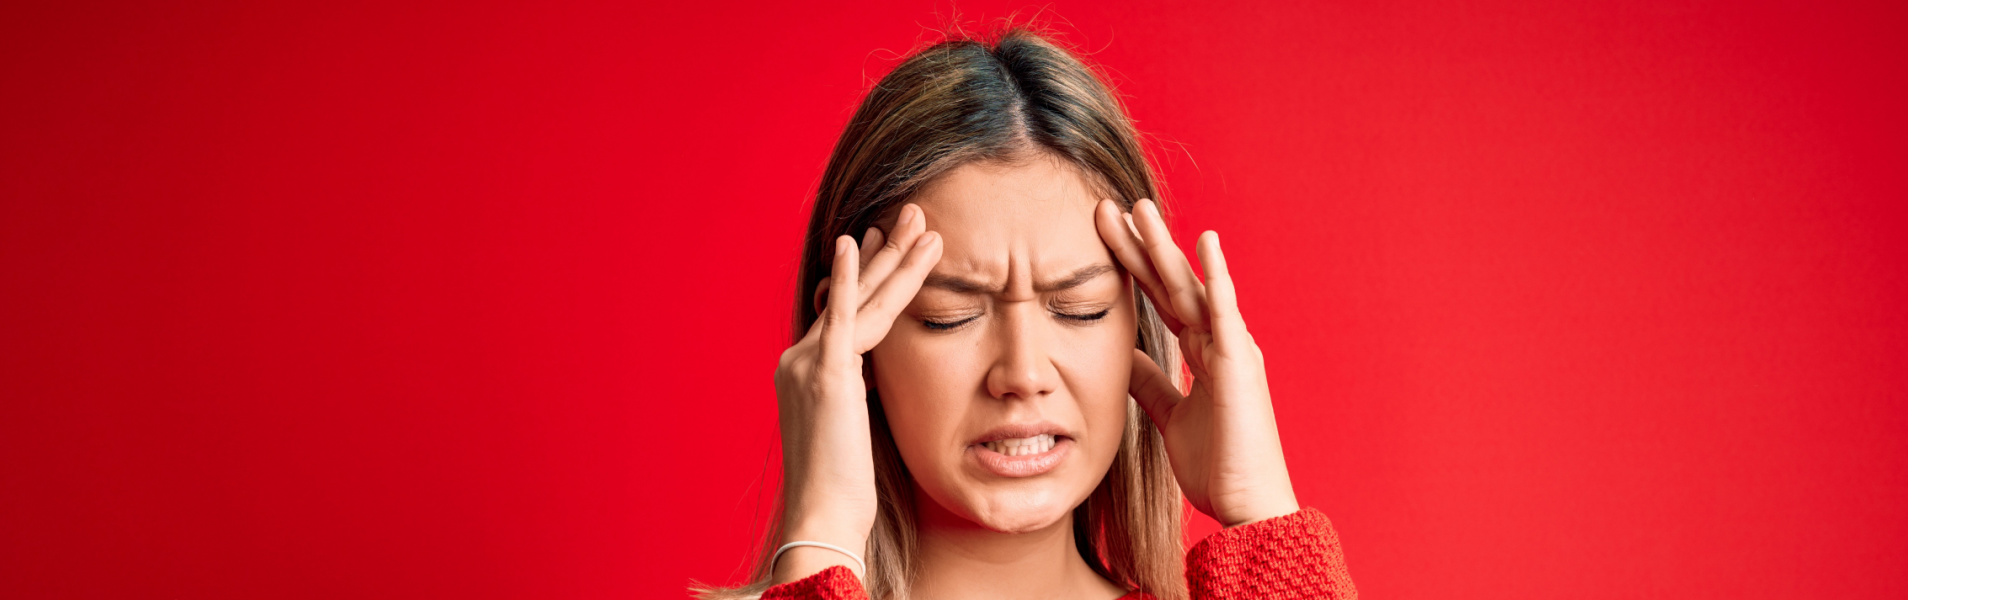 Napięciowy ból głowy - czym jest, wpływ stresu, objawy, leczenie